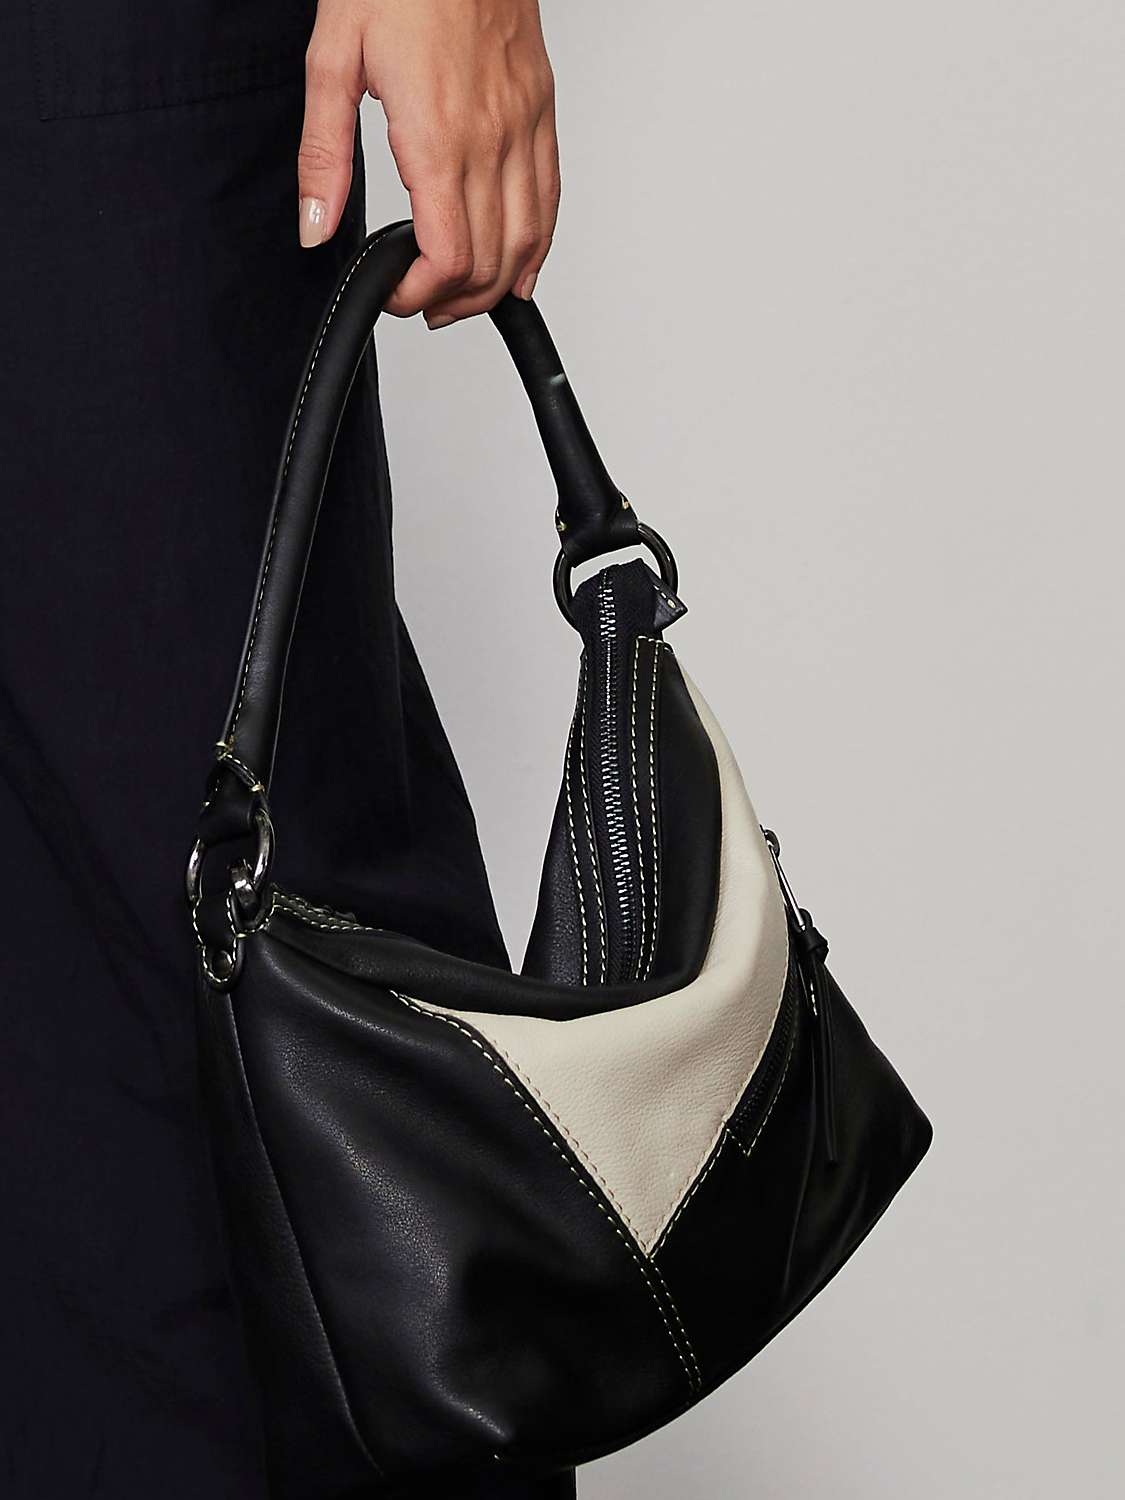 Buy Mint Velvet Leather Cross Body Bag, Black/Cream Online at johnlewis.com